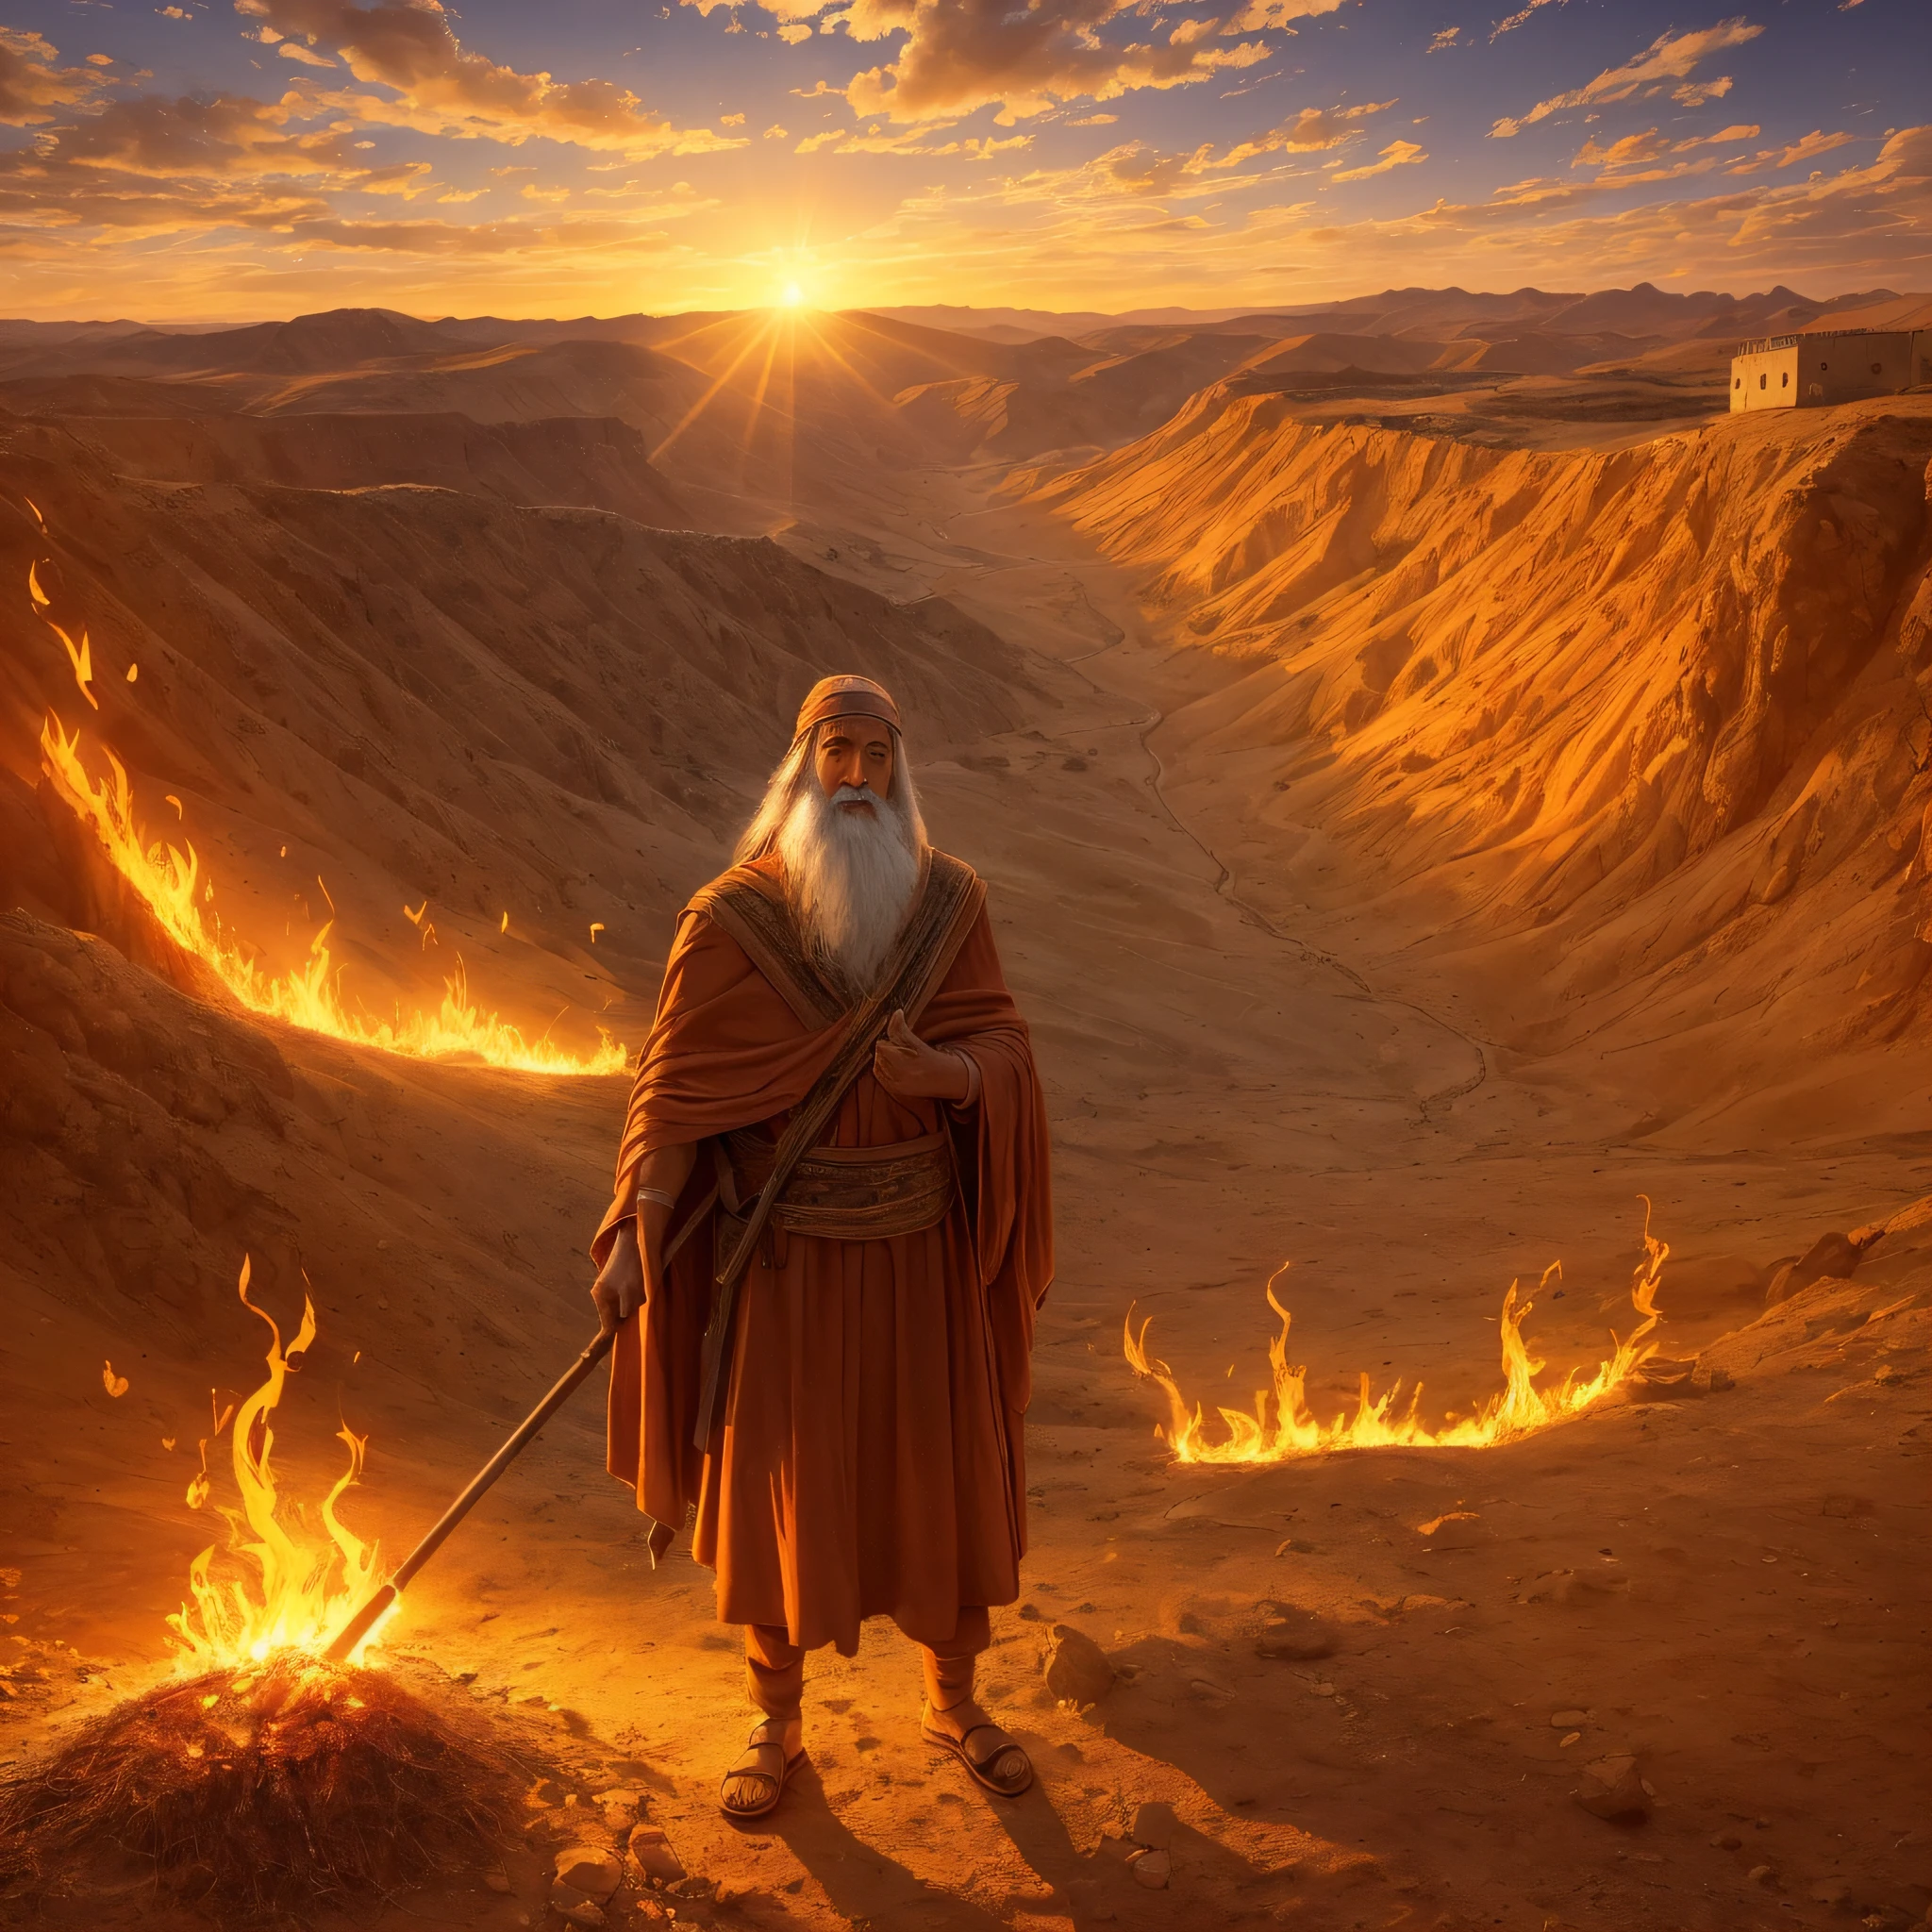 ホレブ山の燃えるような茂みの前のモーセ. モーセは羊飼いの格好をした老人です. 茂みは明るくなっています, 鮮やかな炎, しかし、それは火によって消費されません. モーセは驚きと賞賛をもって茂みを見ます. 周囲の環境は山岳地帯と砂漠です, 太陽が沈み、オレンジ色の光でシーンを照らします. このイメージは、モーセがイスラエルの人々を救うために神によって召された瞬間を表しています. --auto --s2